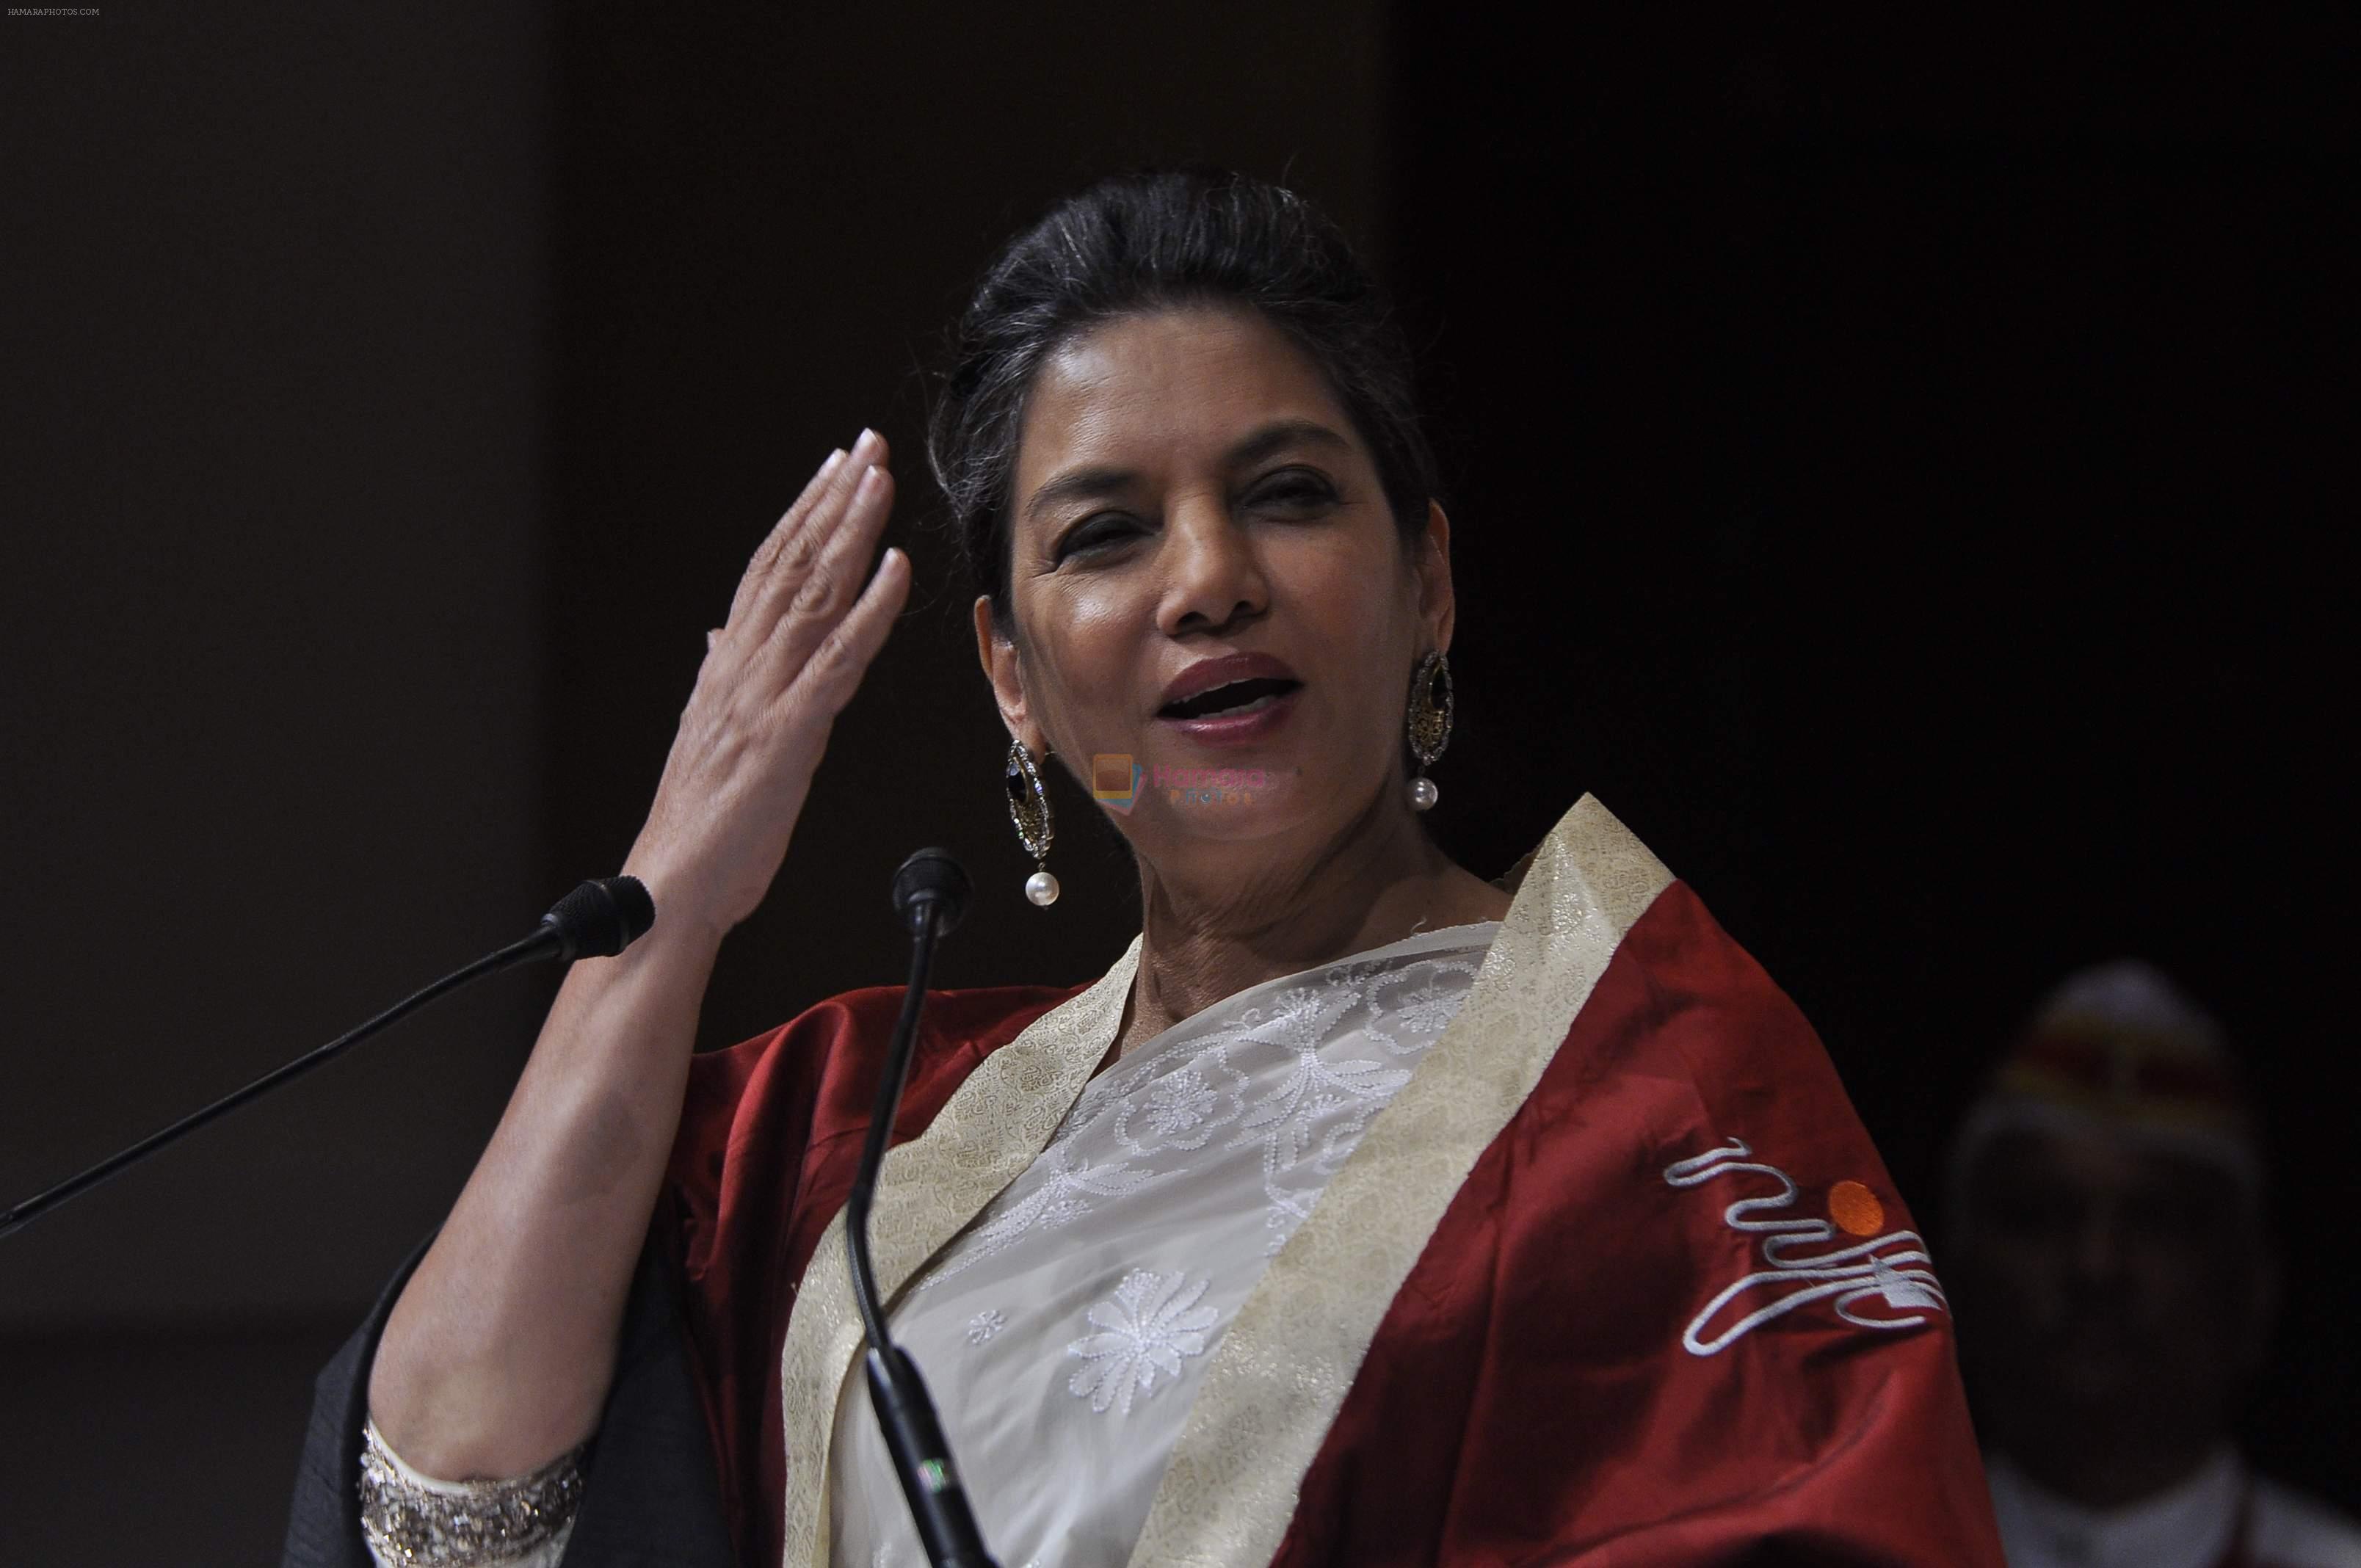 Shabana Azmi celebrating the success of Batch 2014 convocation ceremony and graduation show at NCPA, Mumbai on 25th May 2014